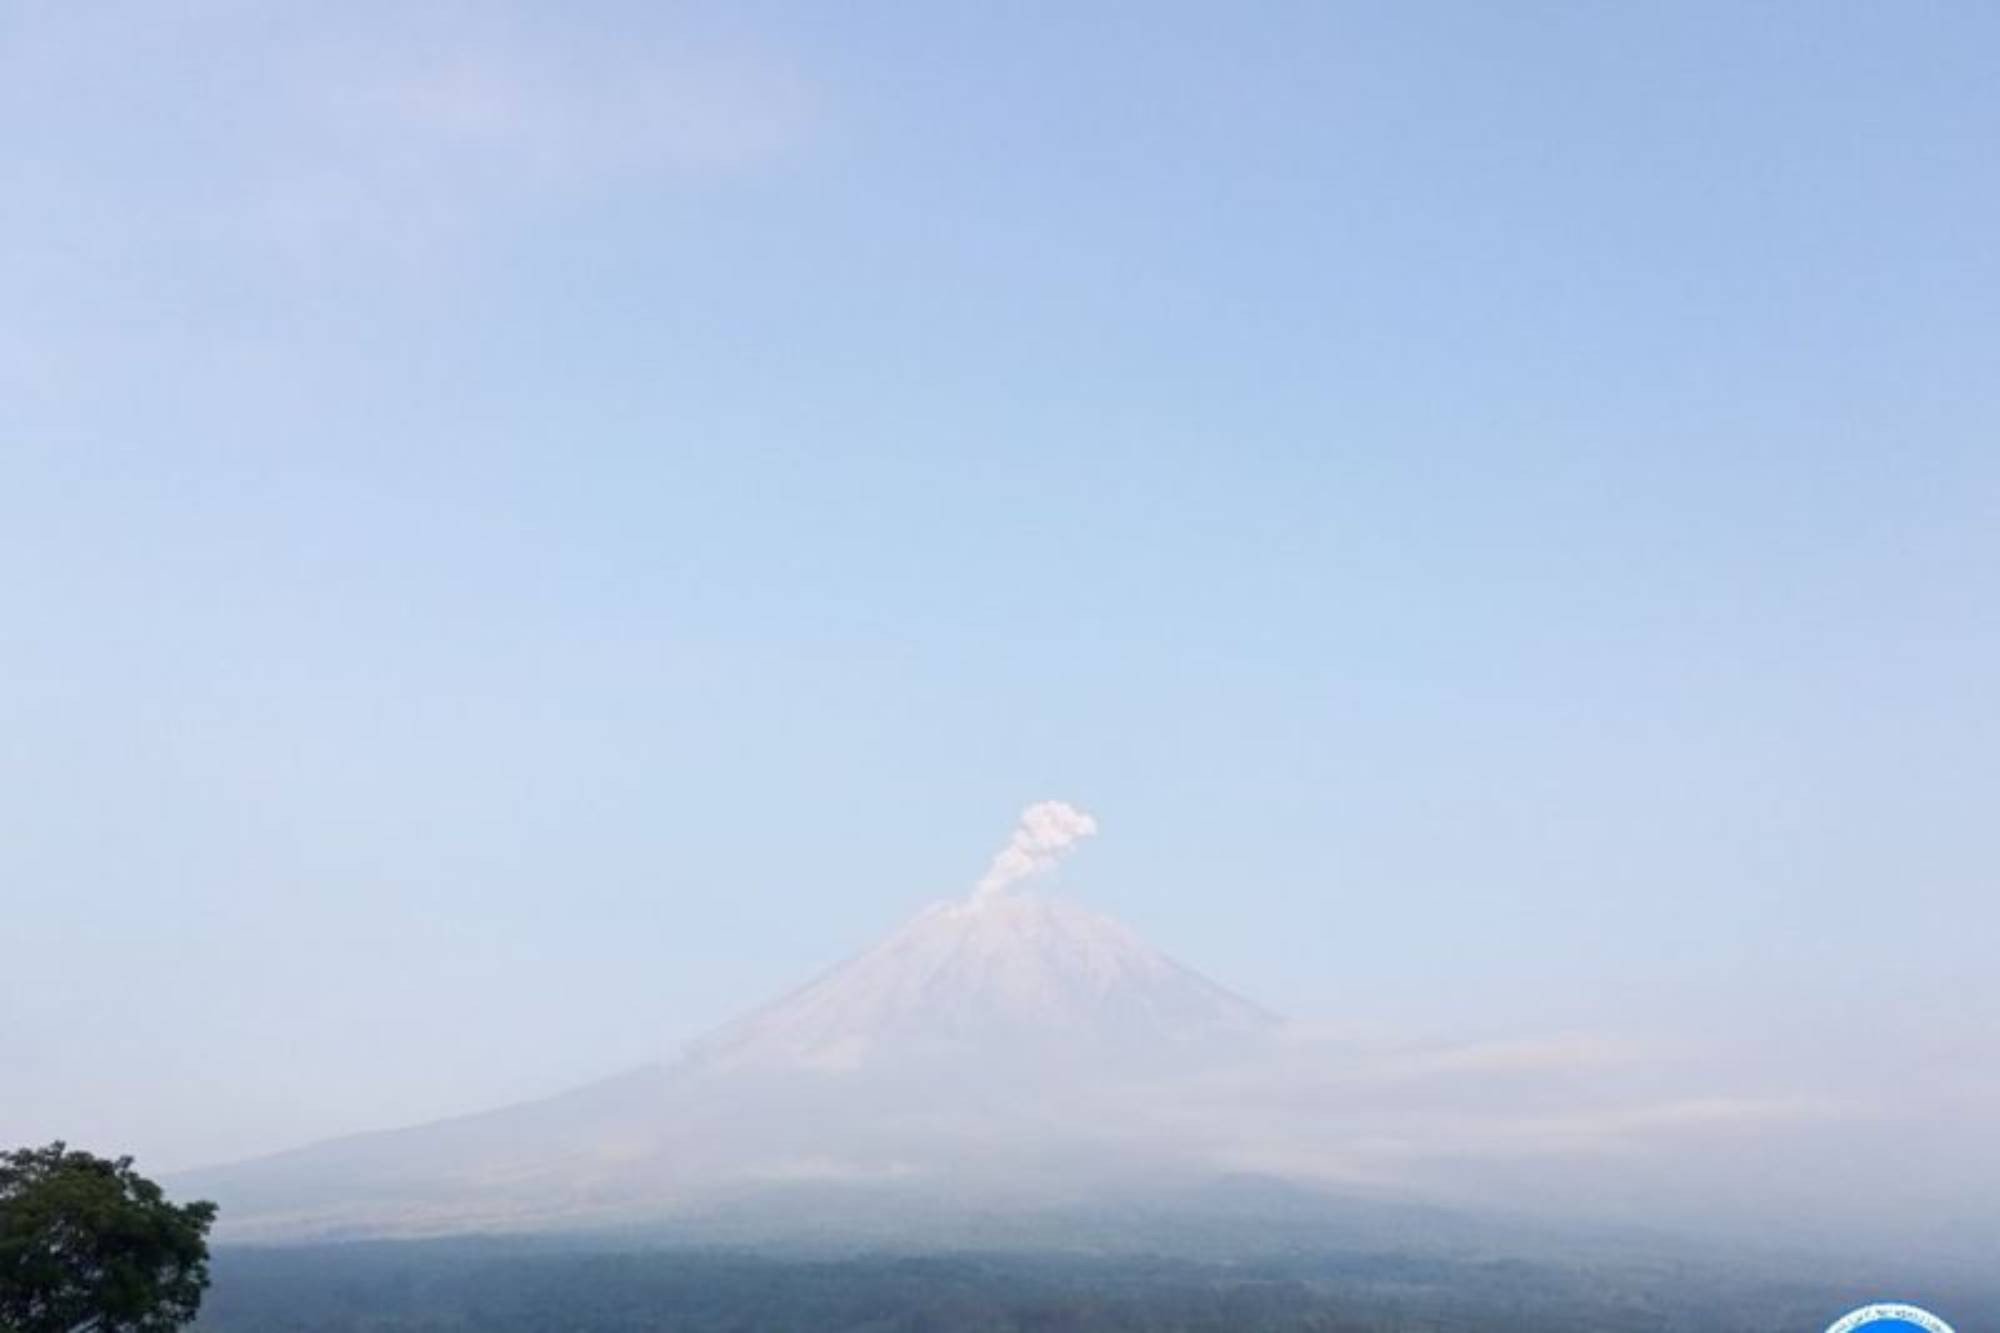 gunung semeru erupsi dengan menyemburkan abu vulkanik setinggi 1 km di atas puncak